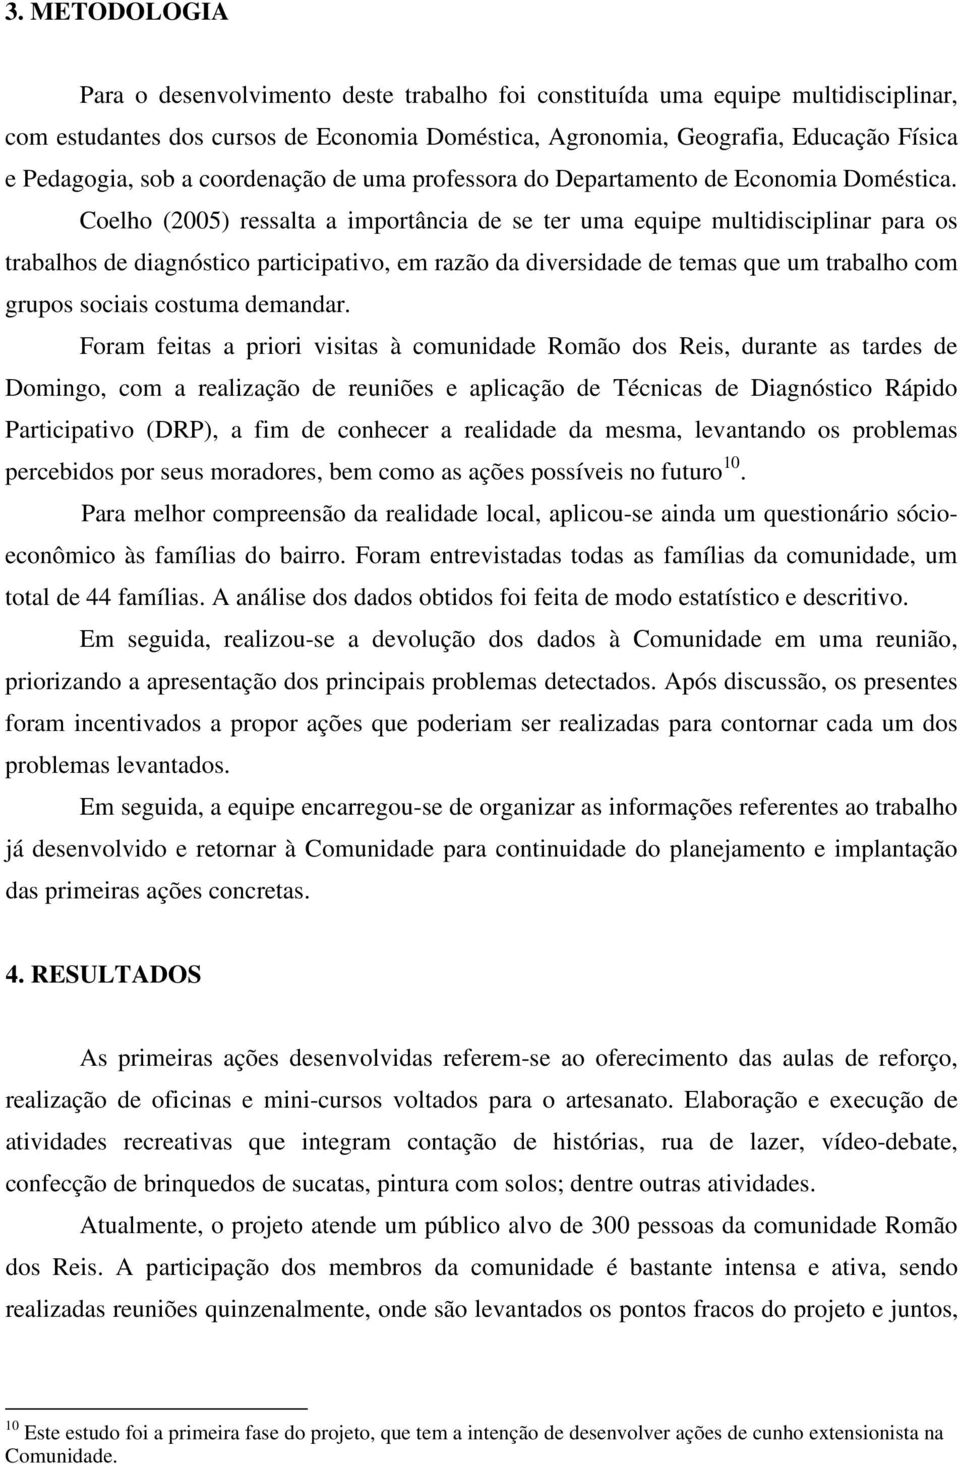 Coelho (2005) ressalta a importância de se ter uma equipe multidisciplinar para os trabalhos de diagnóstico participativo, em razão da diversidade de temas que um trabalho com grupos sociais costuma